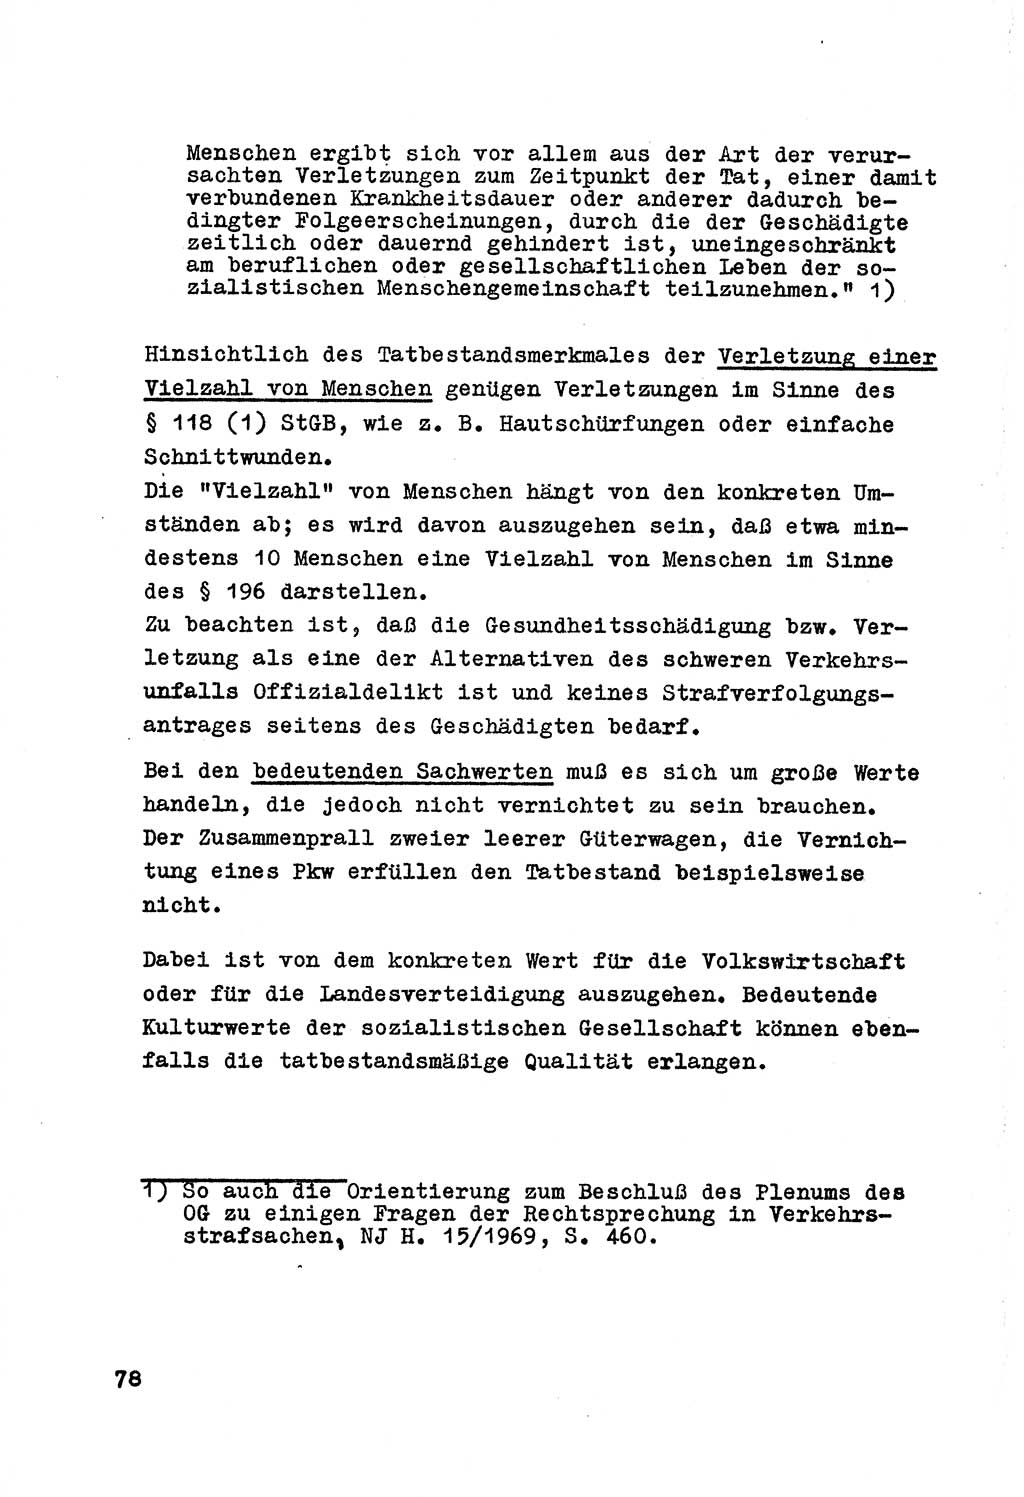 Strafrecht der DDR (Deutsche Demokratische Republik), Besonderer Teil, Lehrmaterial, Heft 7 1970, Seite 78 (Strafr. DDR BT Lehrmat. H. 7 1970, S. 78)